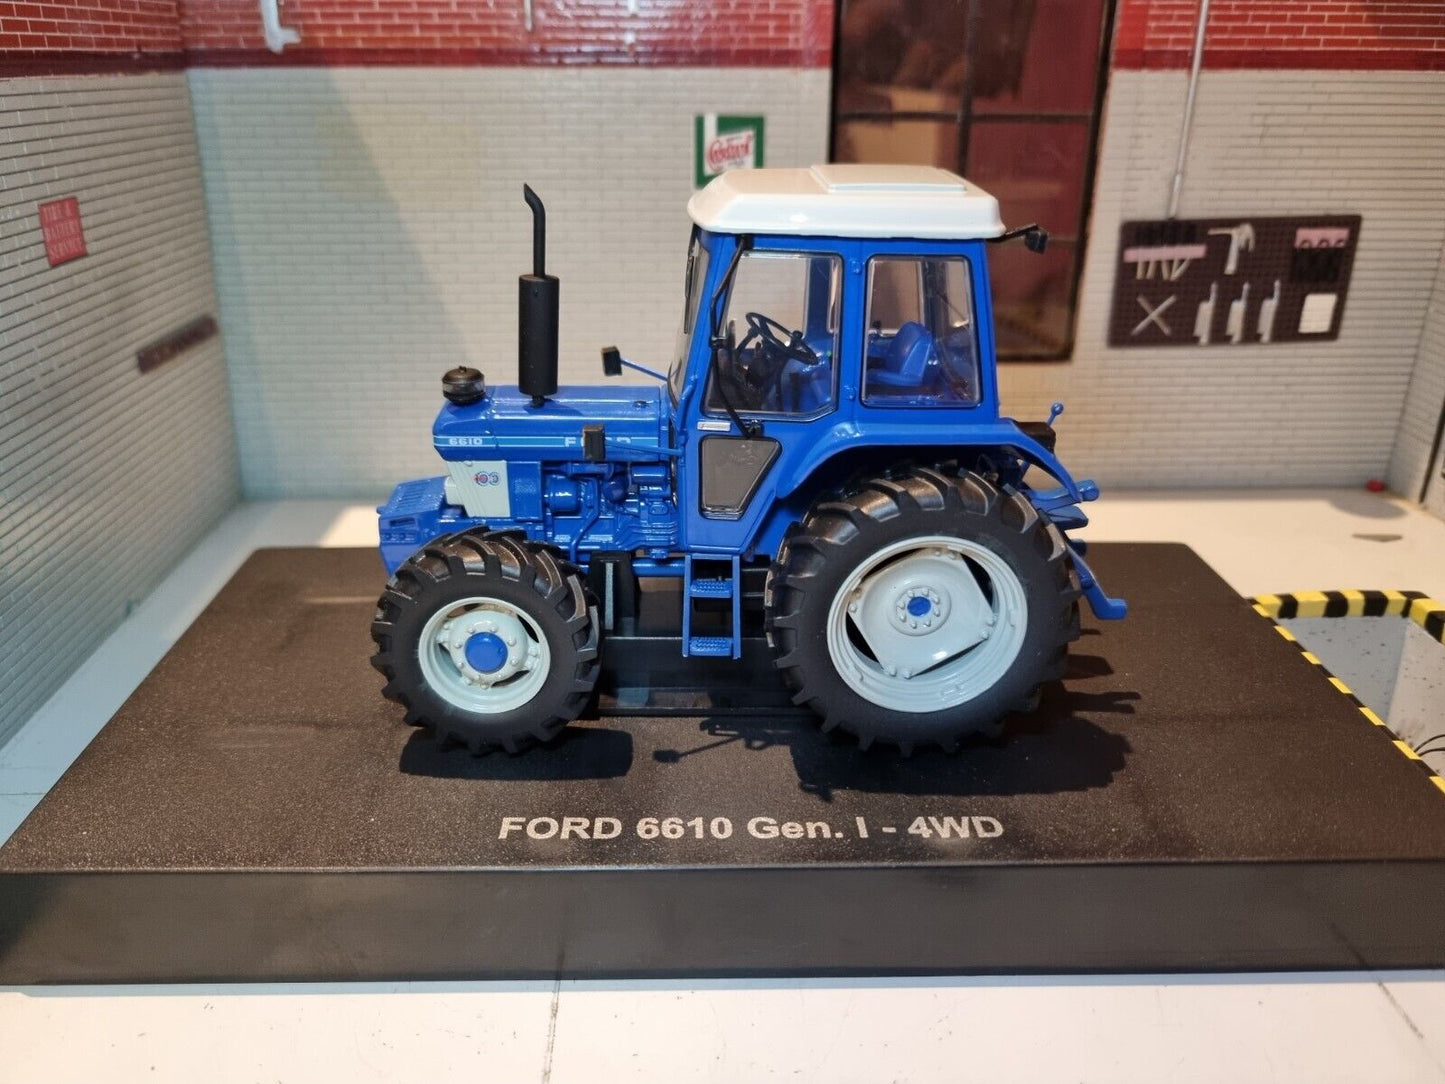 Ford 6610 Gen 1 Tracteur 4WD 1982-1993 UH5367 Universal Hobbies 1:32